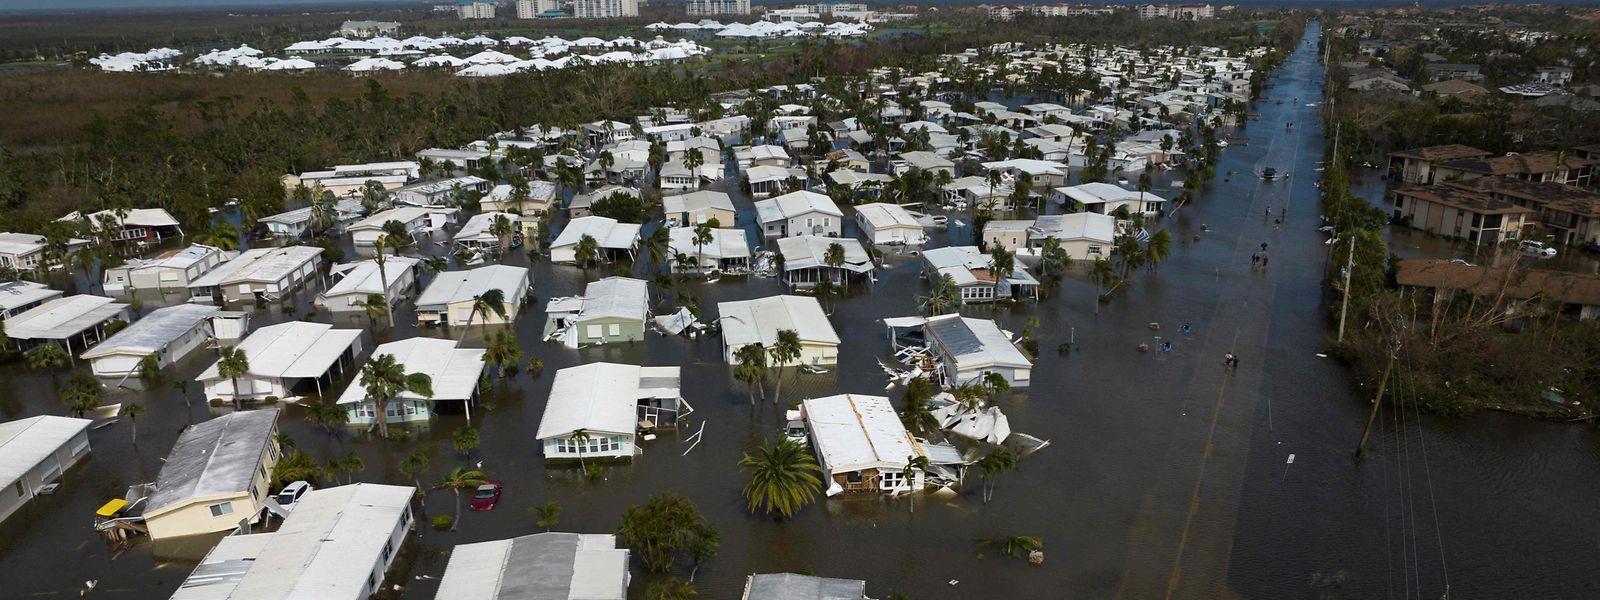 Vista aérea de um bairro inundado na sequência do furacão Ian em Fort Myers, Florida, esta quinta-feira